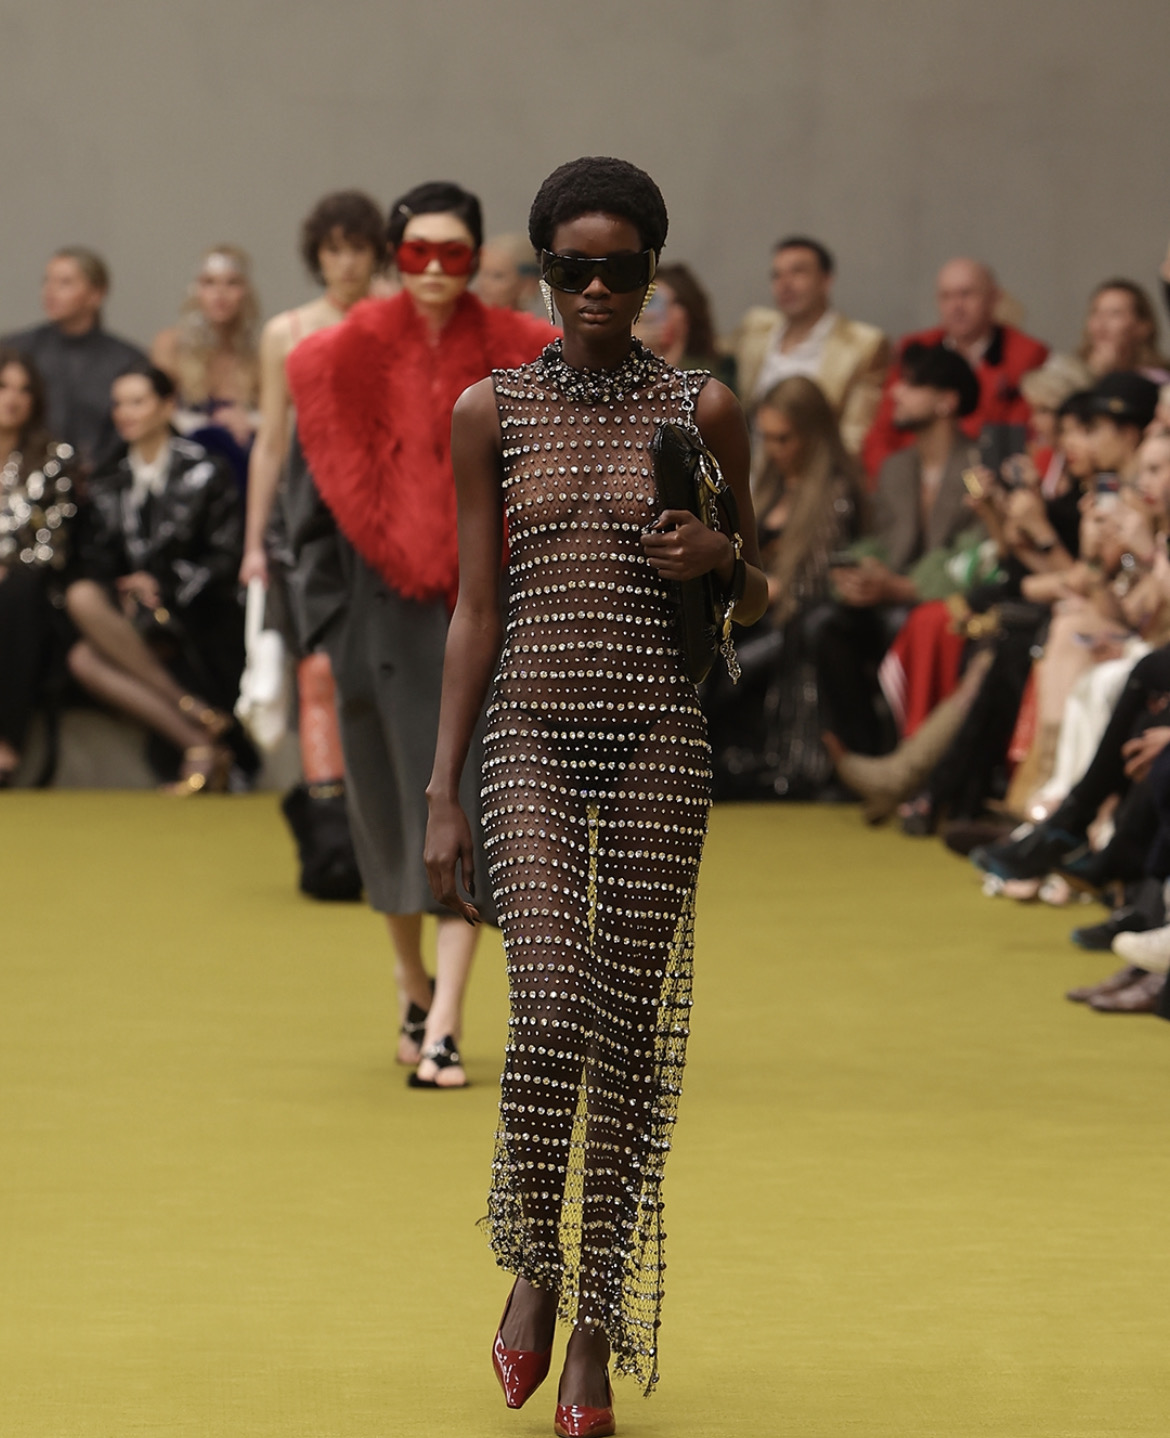 Gucci без Микеле и прощание с минимализмом Jil Sander на Неделе моды в Милане